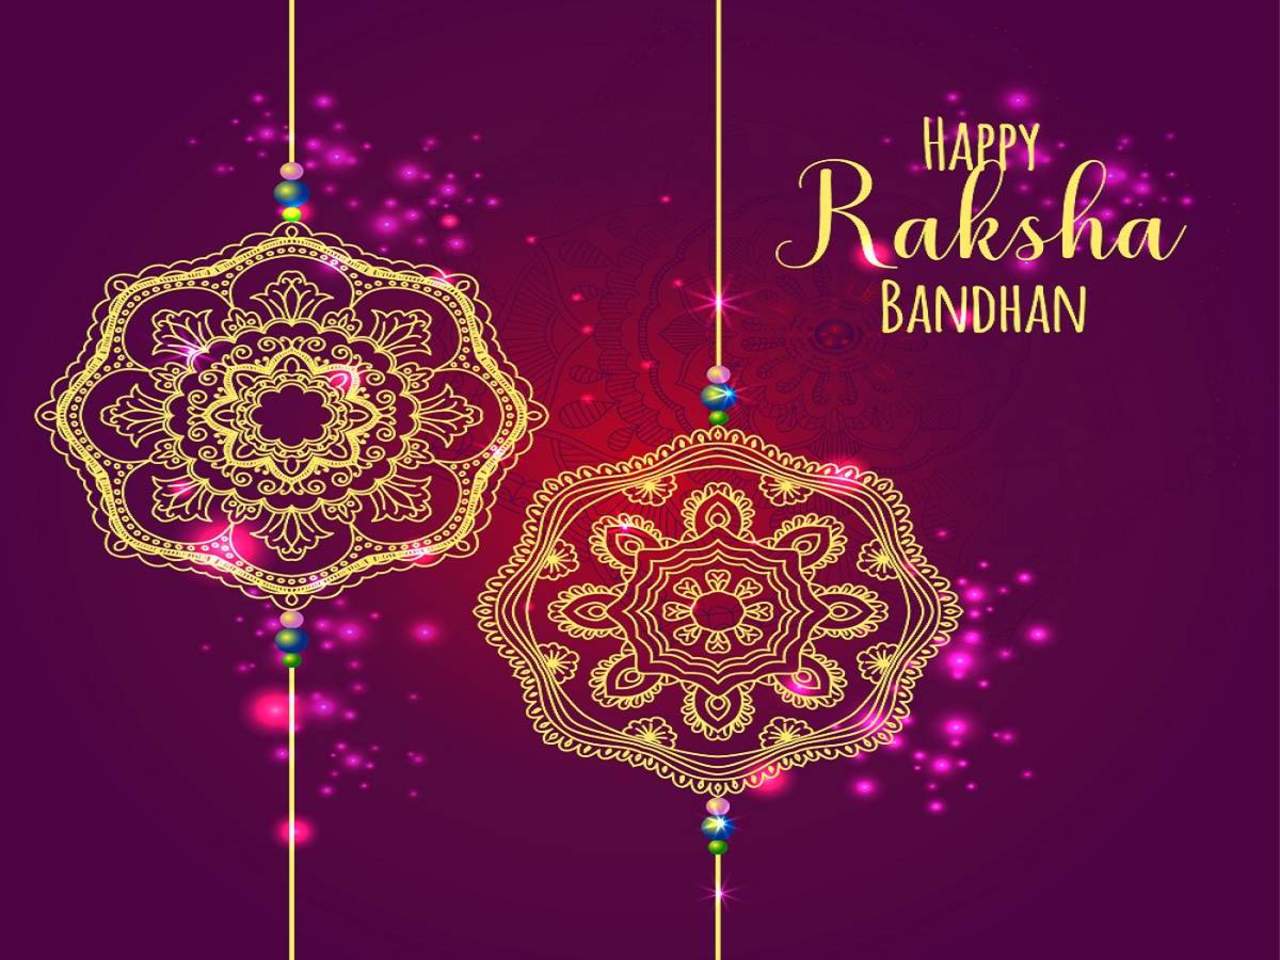 HD wallpaper: Happy, Raksha, Bandhan | Wallpaper Flare